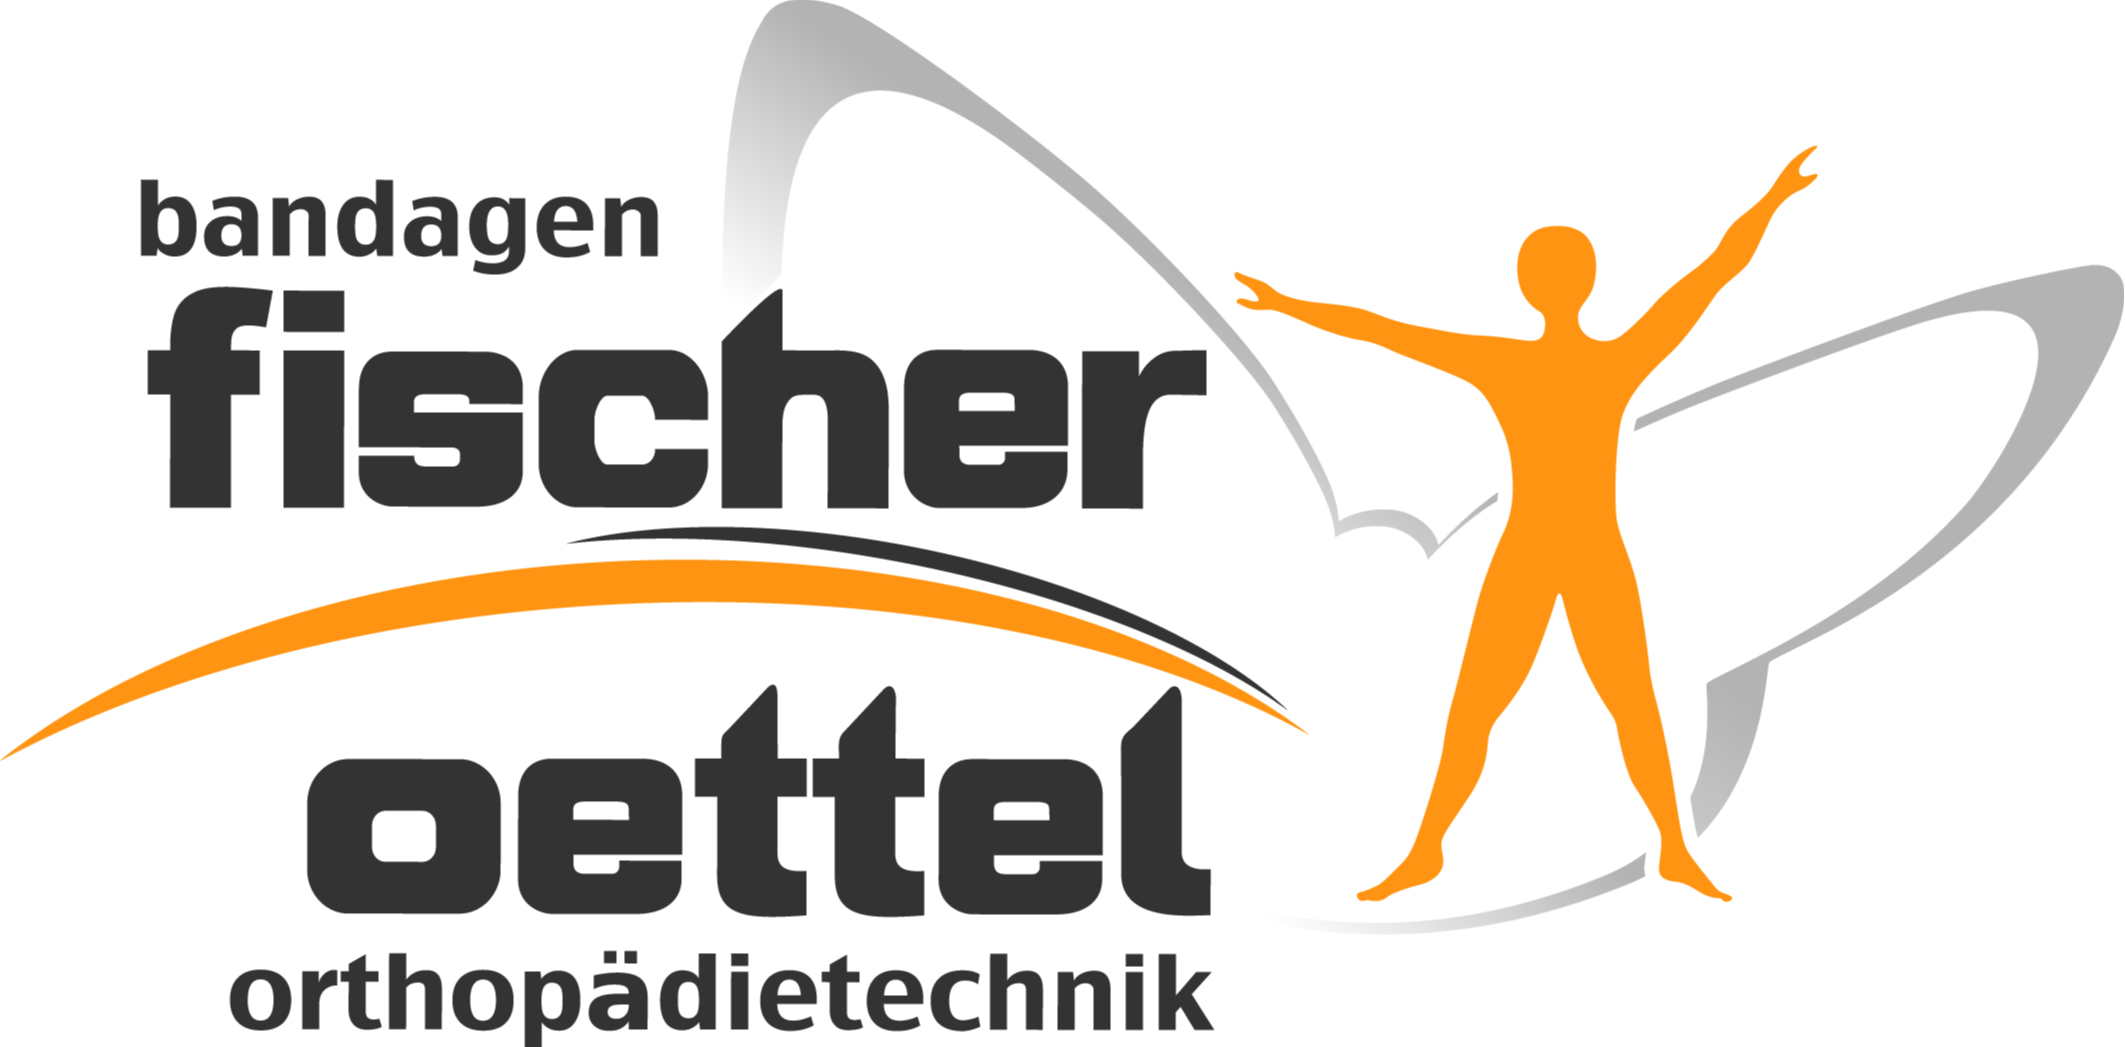 Logo der Firma Bandagen Fischer Oettel Orthopädietechnik aus Klingenthal